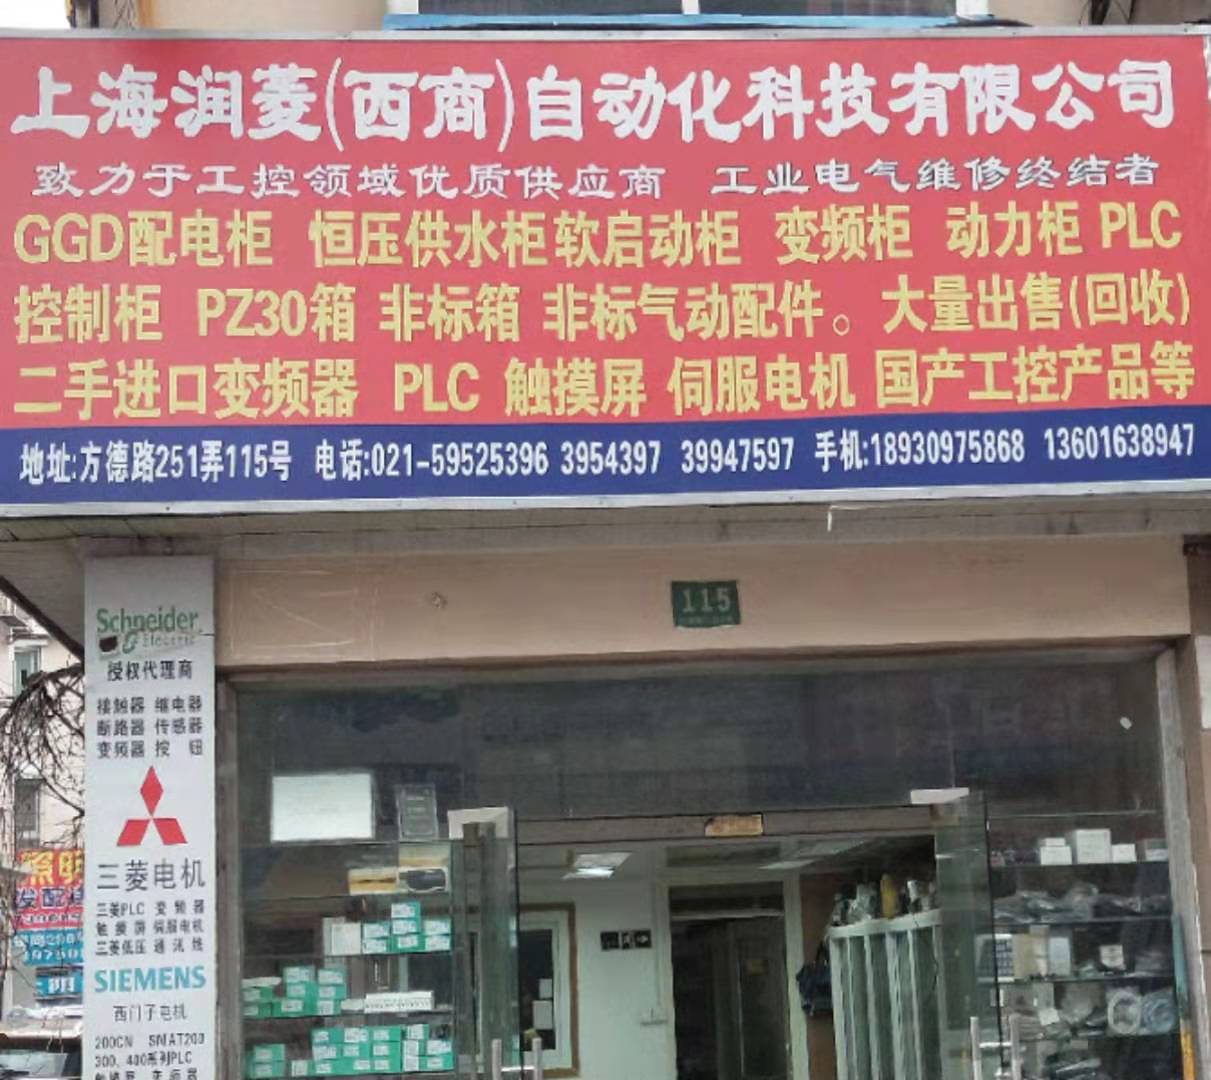 上海潤菱自動化科技有限公司